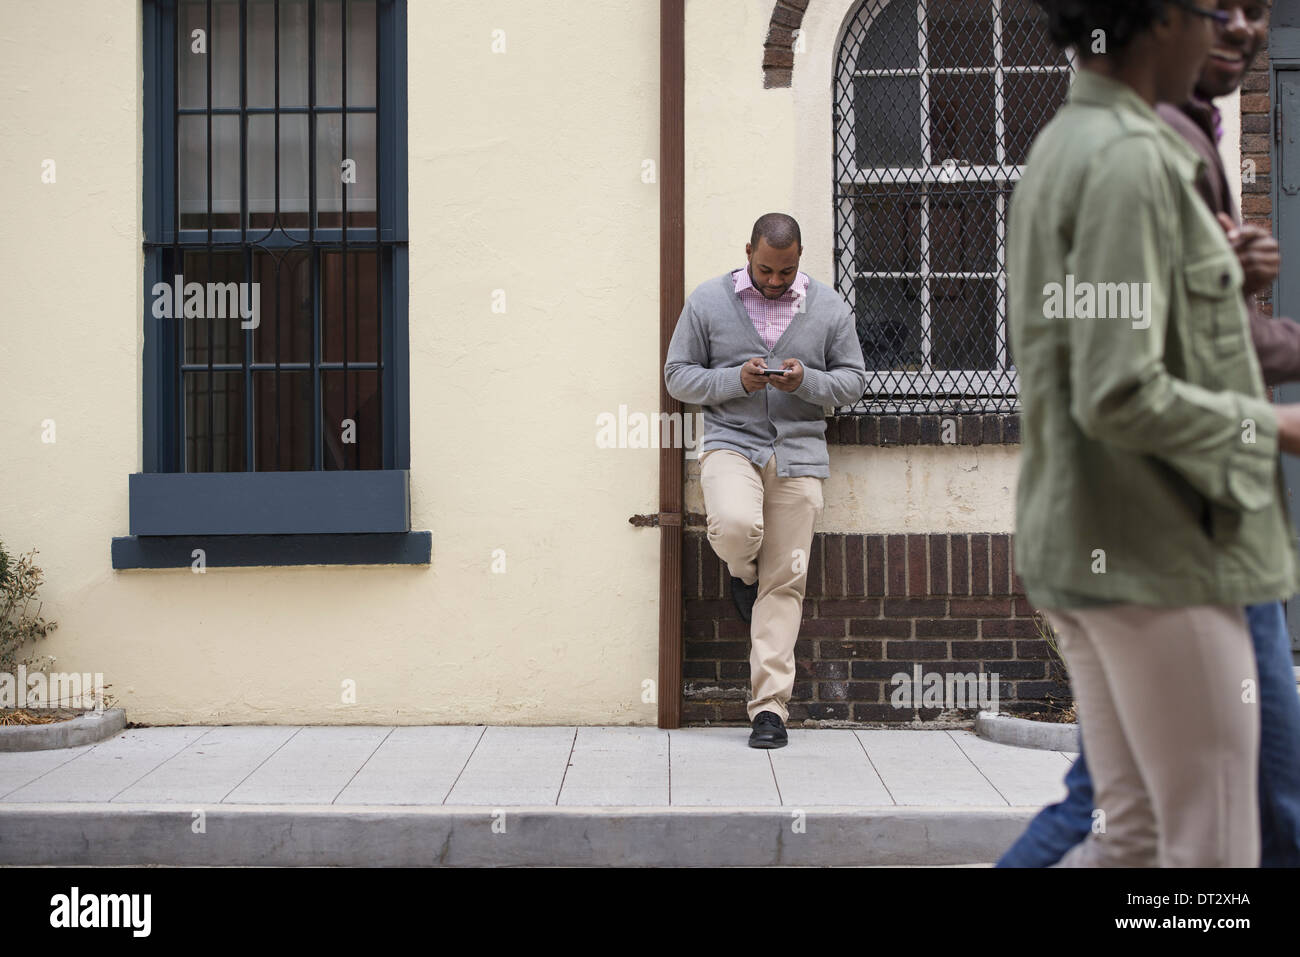 All'aperto nella città in primavera un giovane camminando sul marciapiede e un uomo appoggiato contro una parete controllando il suo telefono Foto Stock